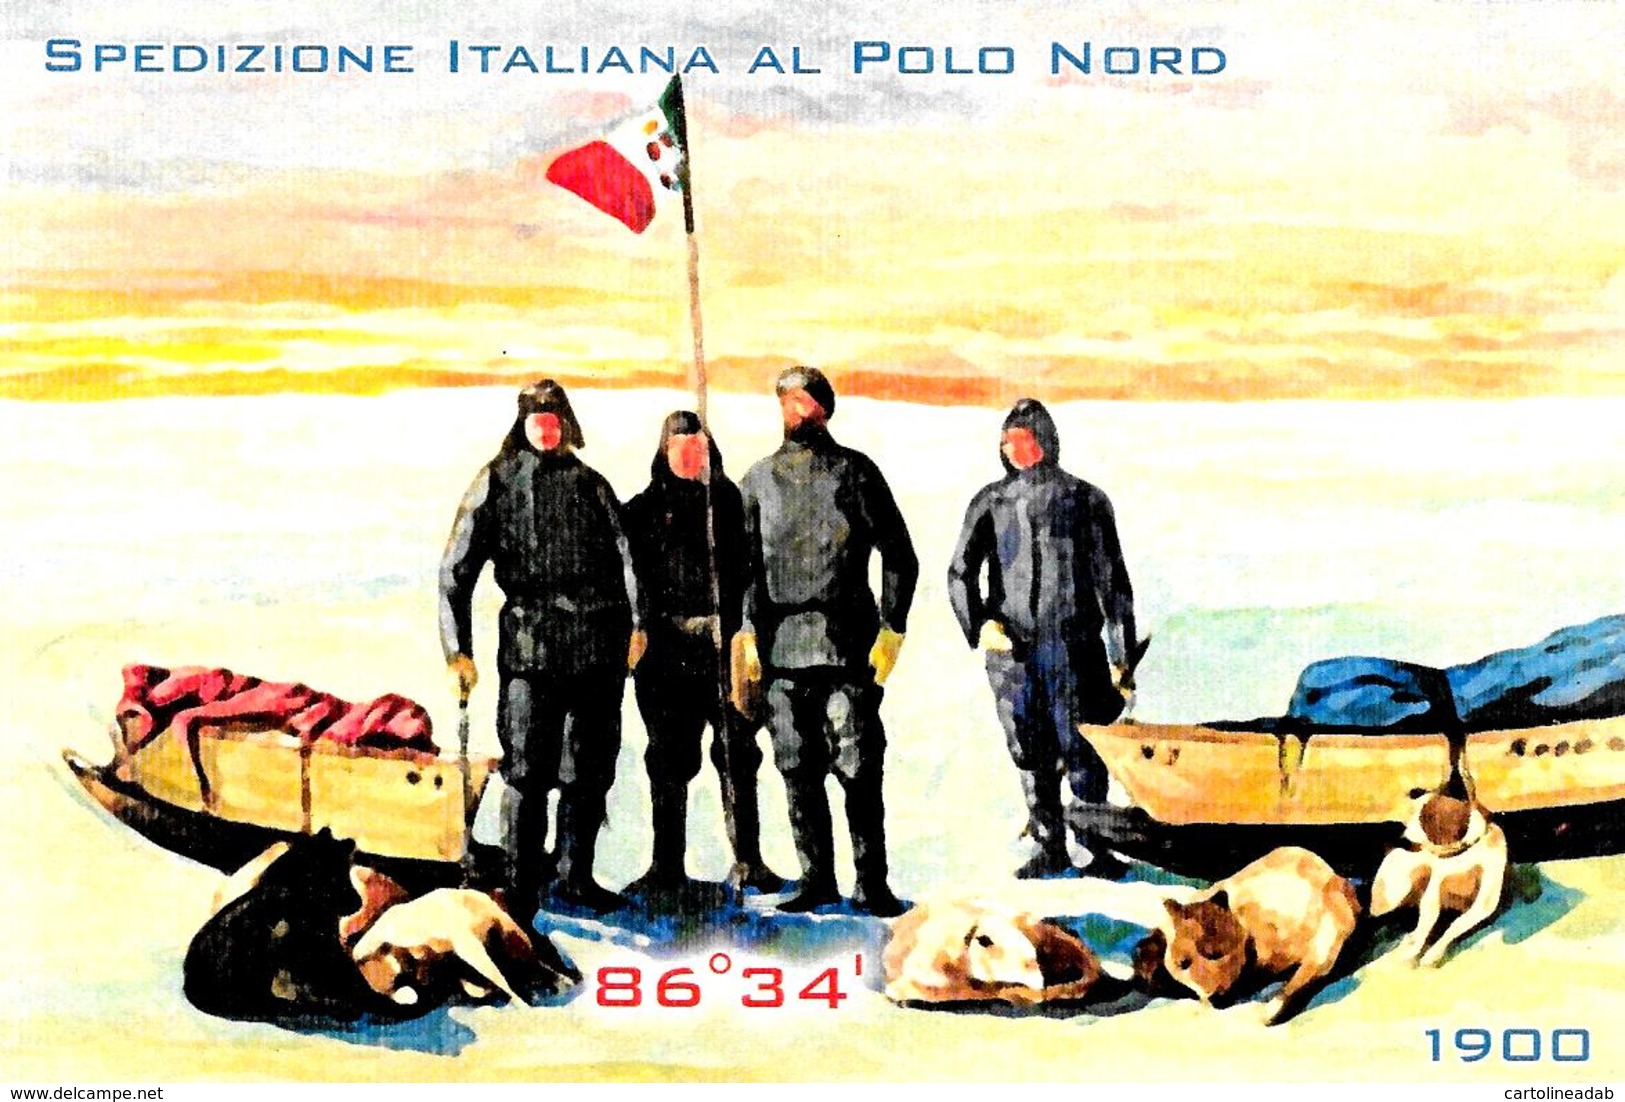 [MD2784] CPM - SPEDIZIONE ITALIANA AL POLO NORD - EDIZIONI APAC - 2010 - Non Viaggiata - Storia